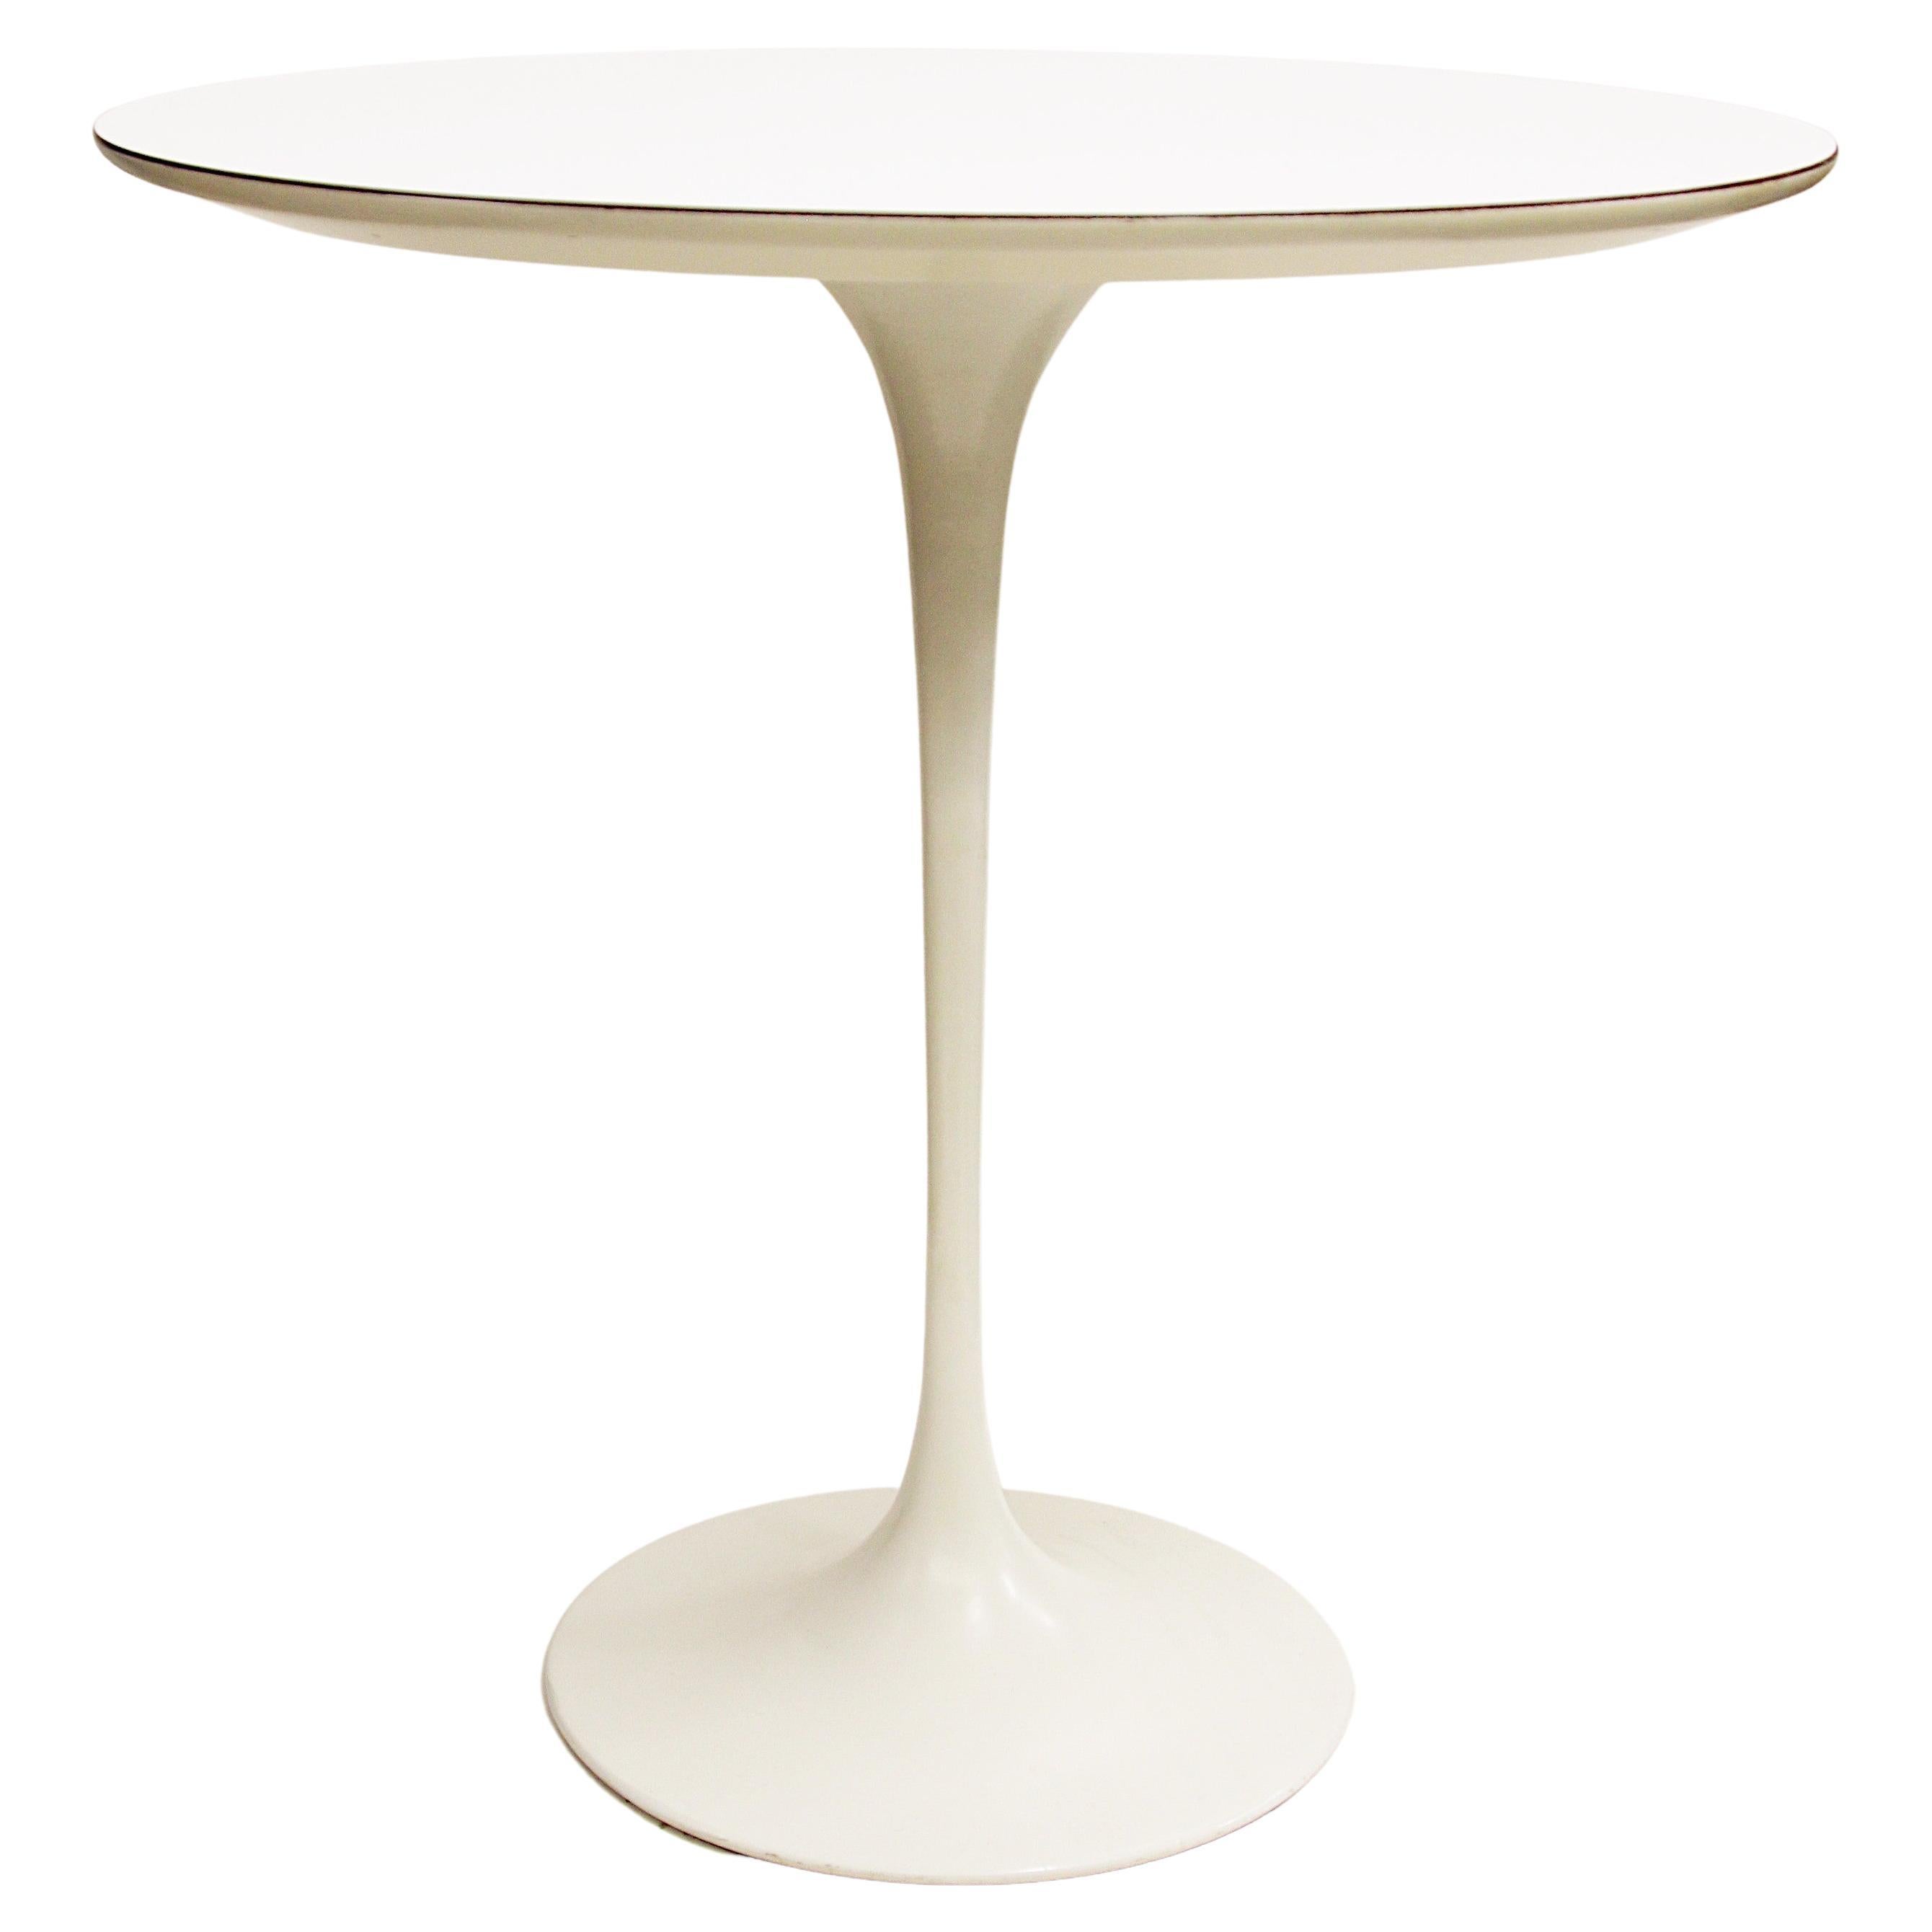 1960's Mid-Century Modern Eero Saarinen Pedestal Side End Table by Knoll